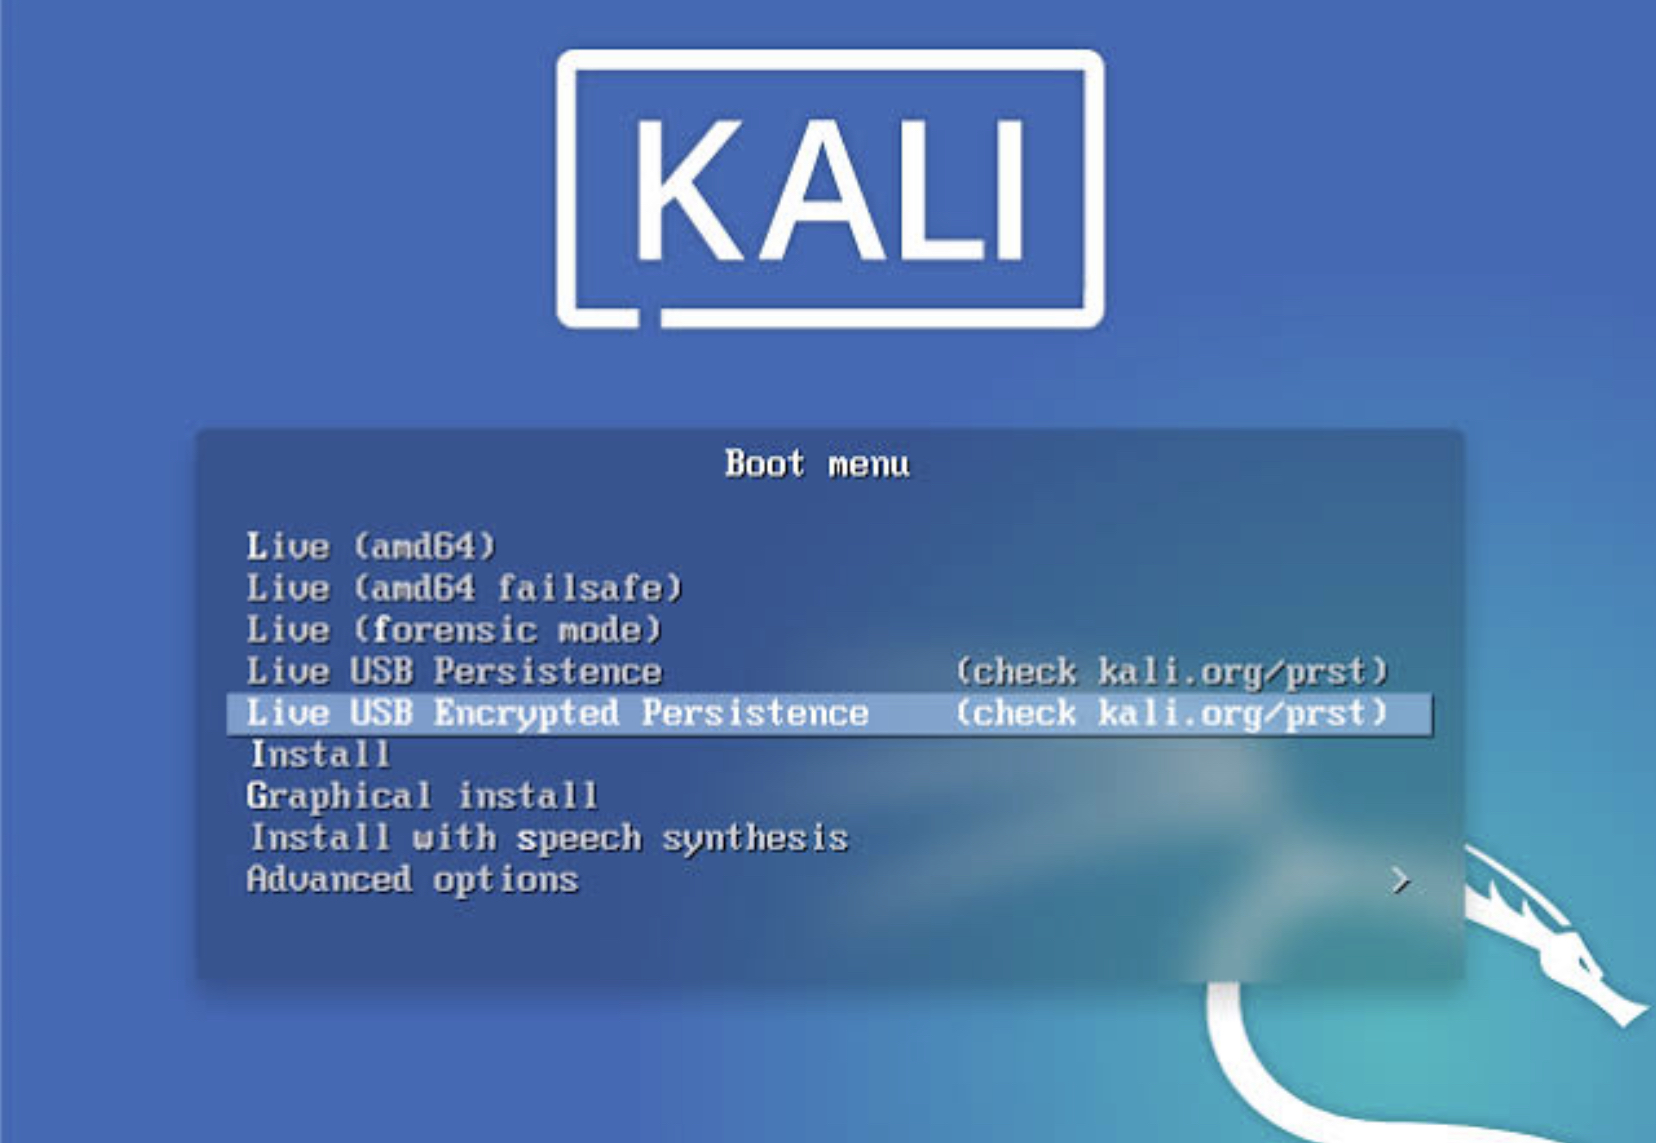 kali linux live usb iso download